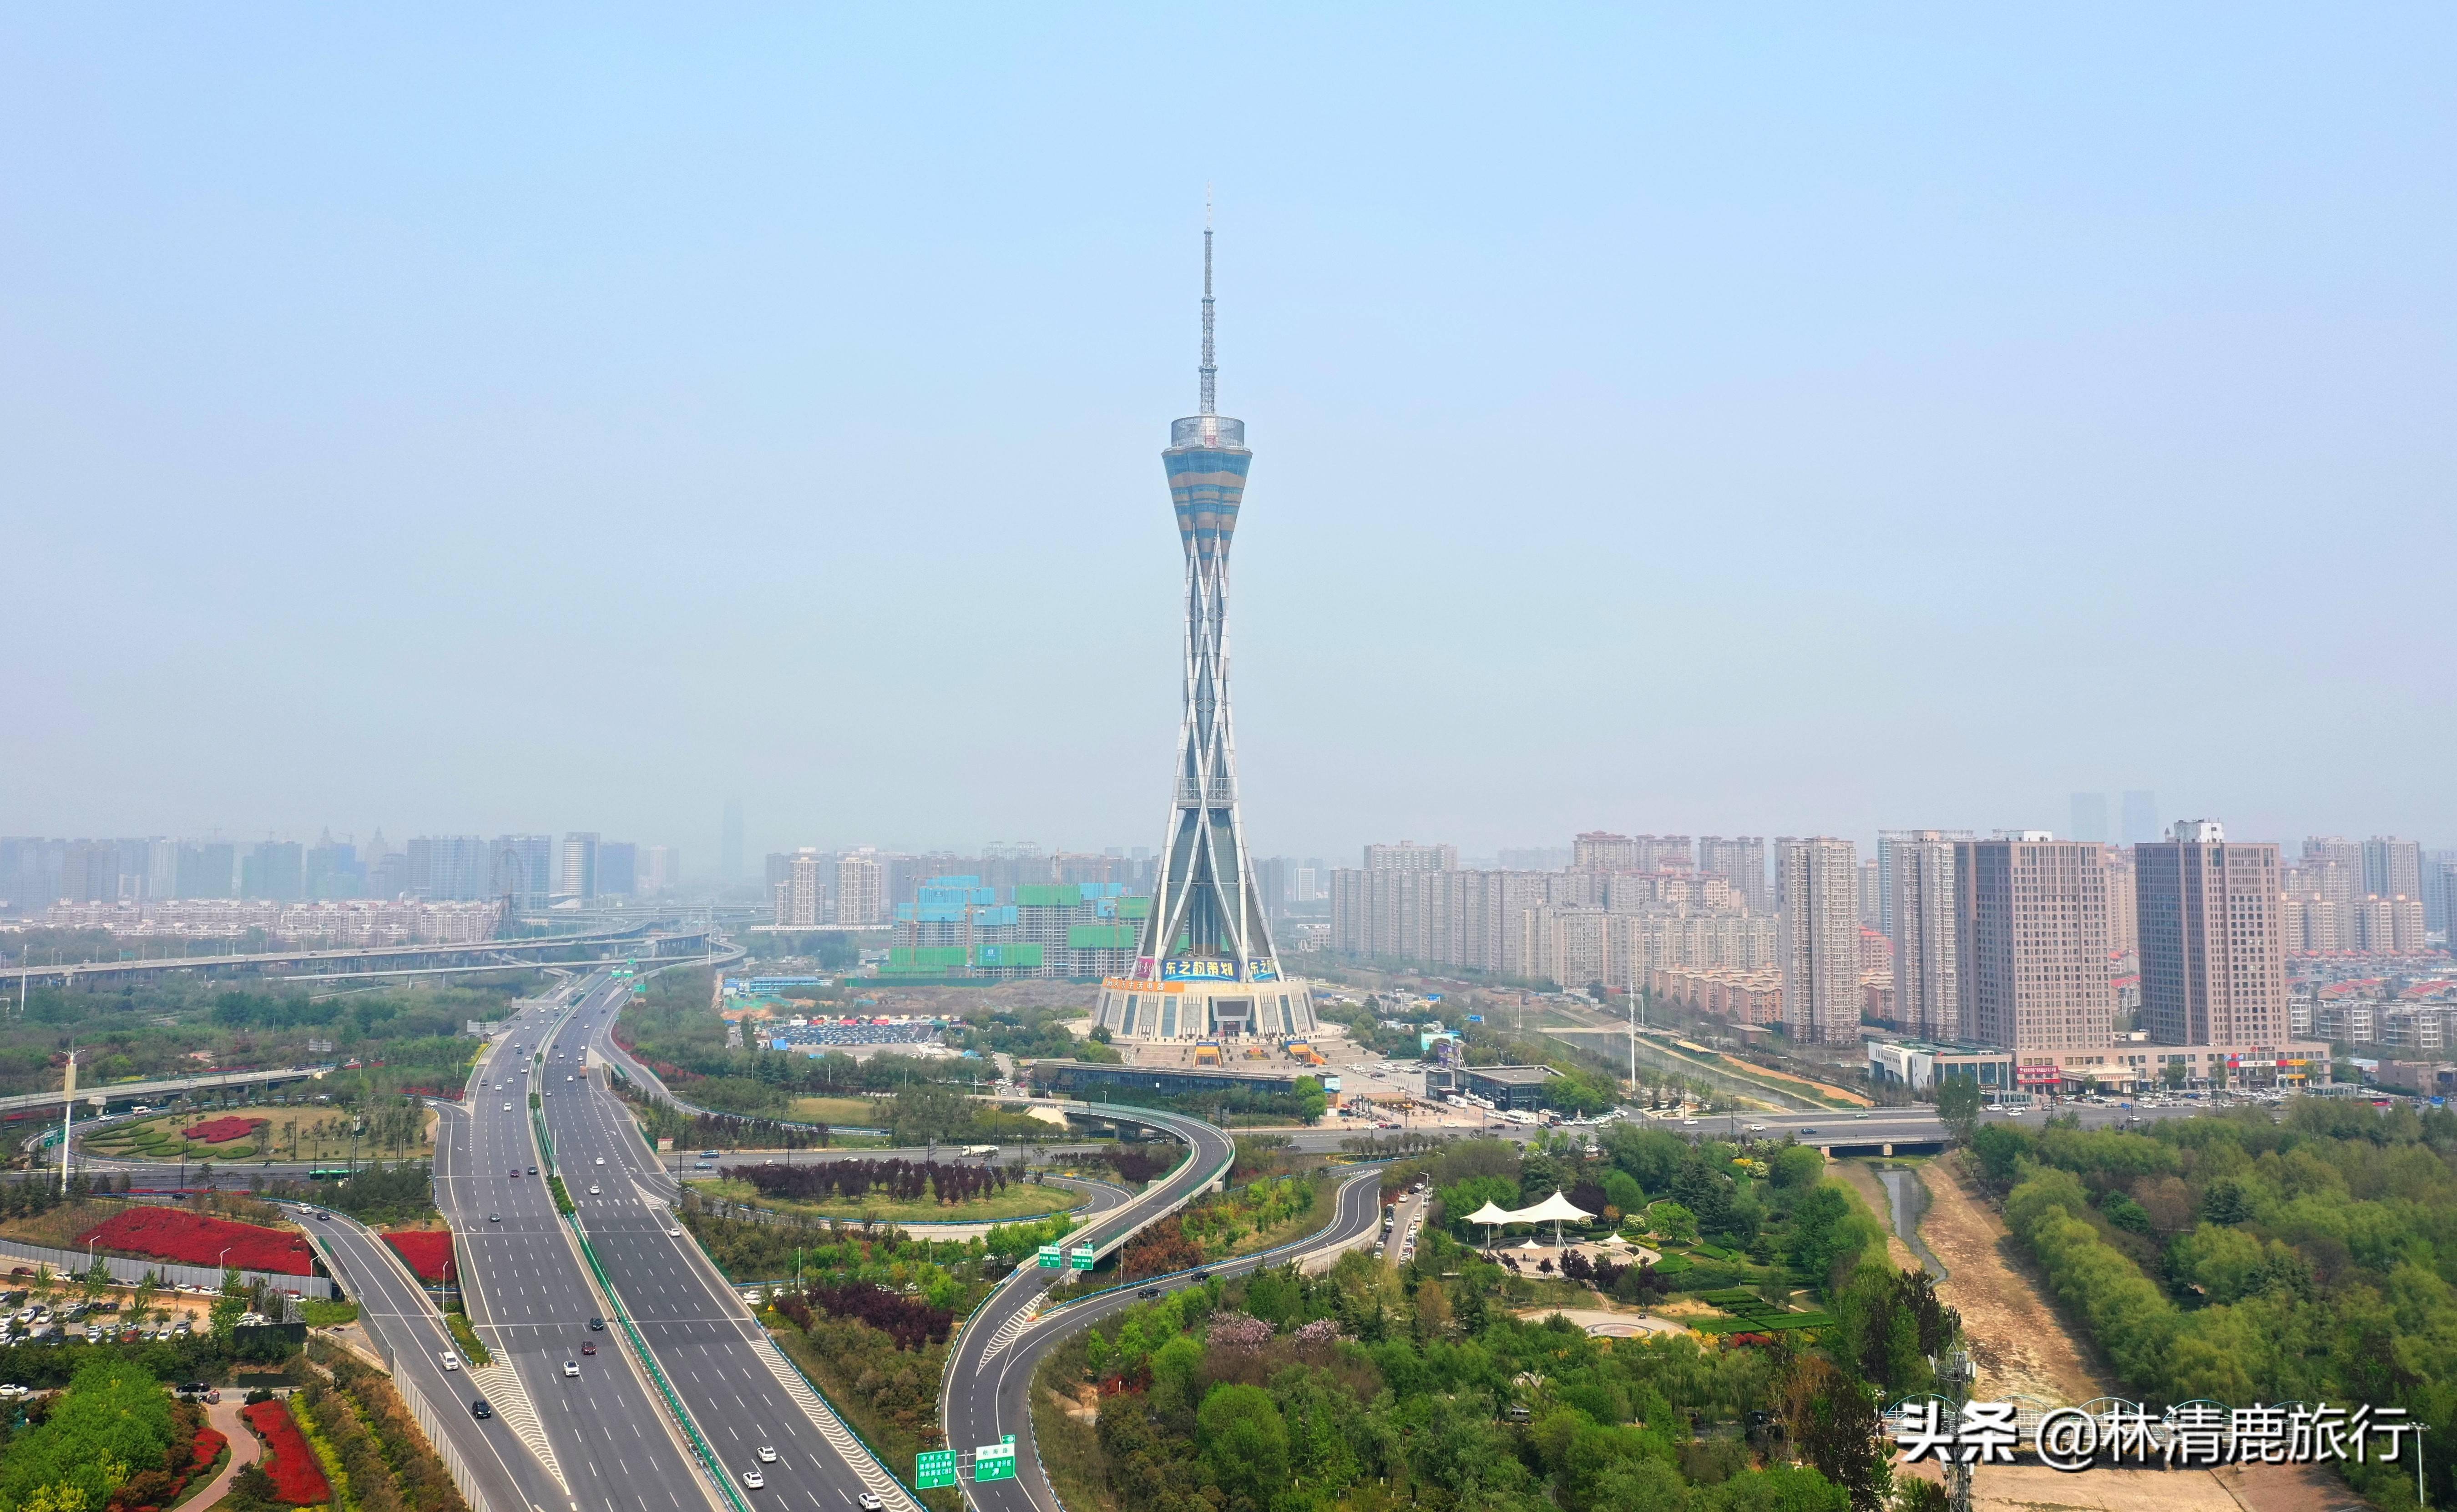 中原福塔是郑州市区内的一个景点,建成之初占尽了风光,通体采用全钢